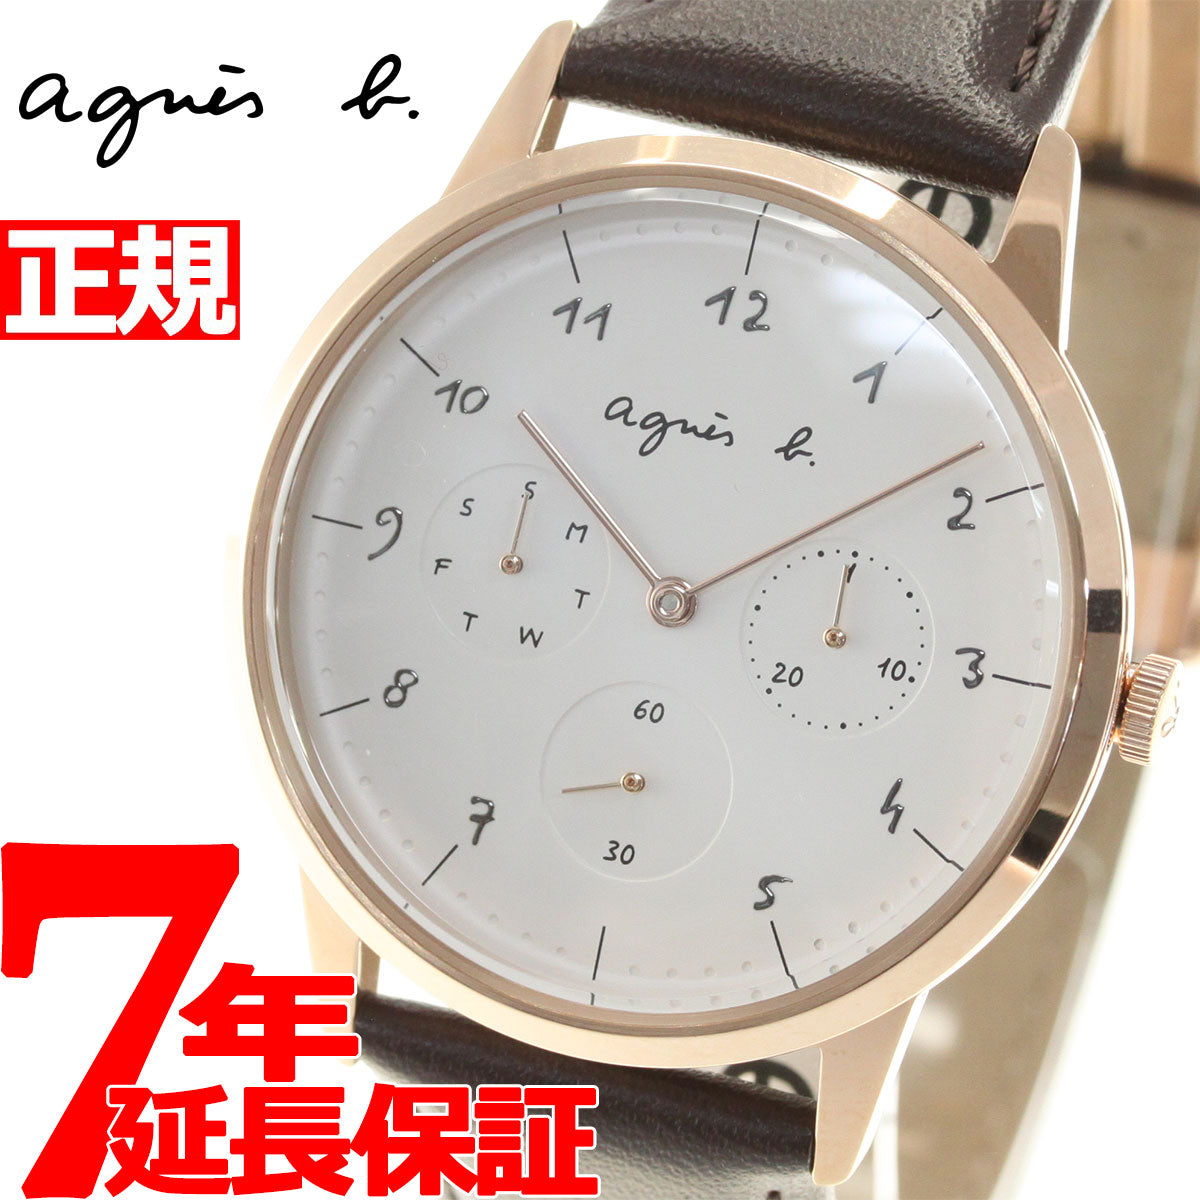 アニエスベー 時計 メンズ 腕時計 agnes b. マルチェロ Marcello 